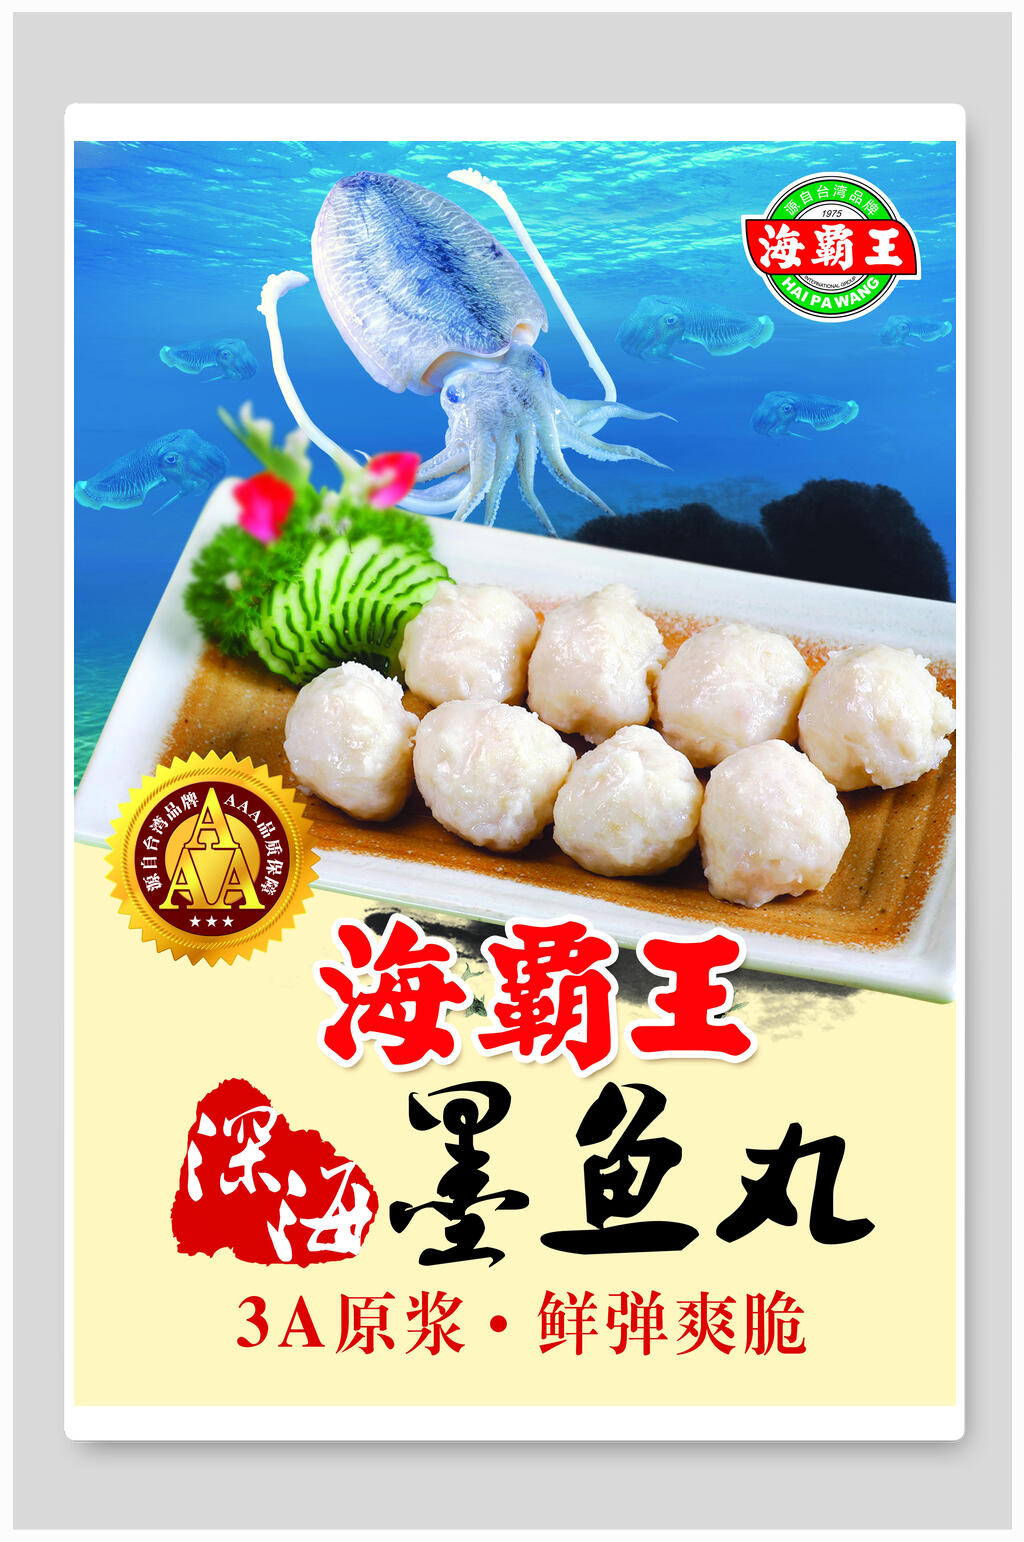 海鲜福建鱼丸小吃促销宣传餐饮海报素材